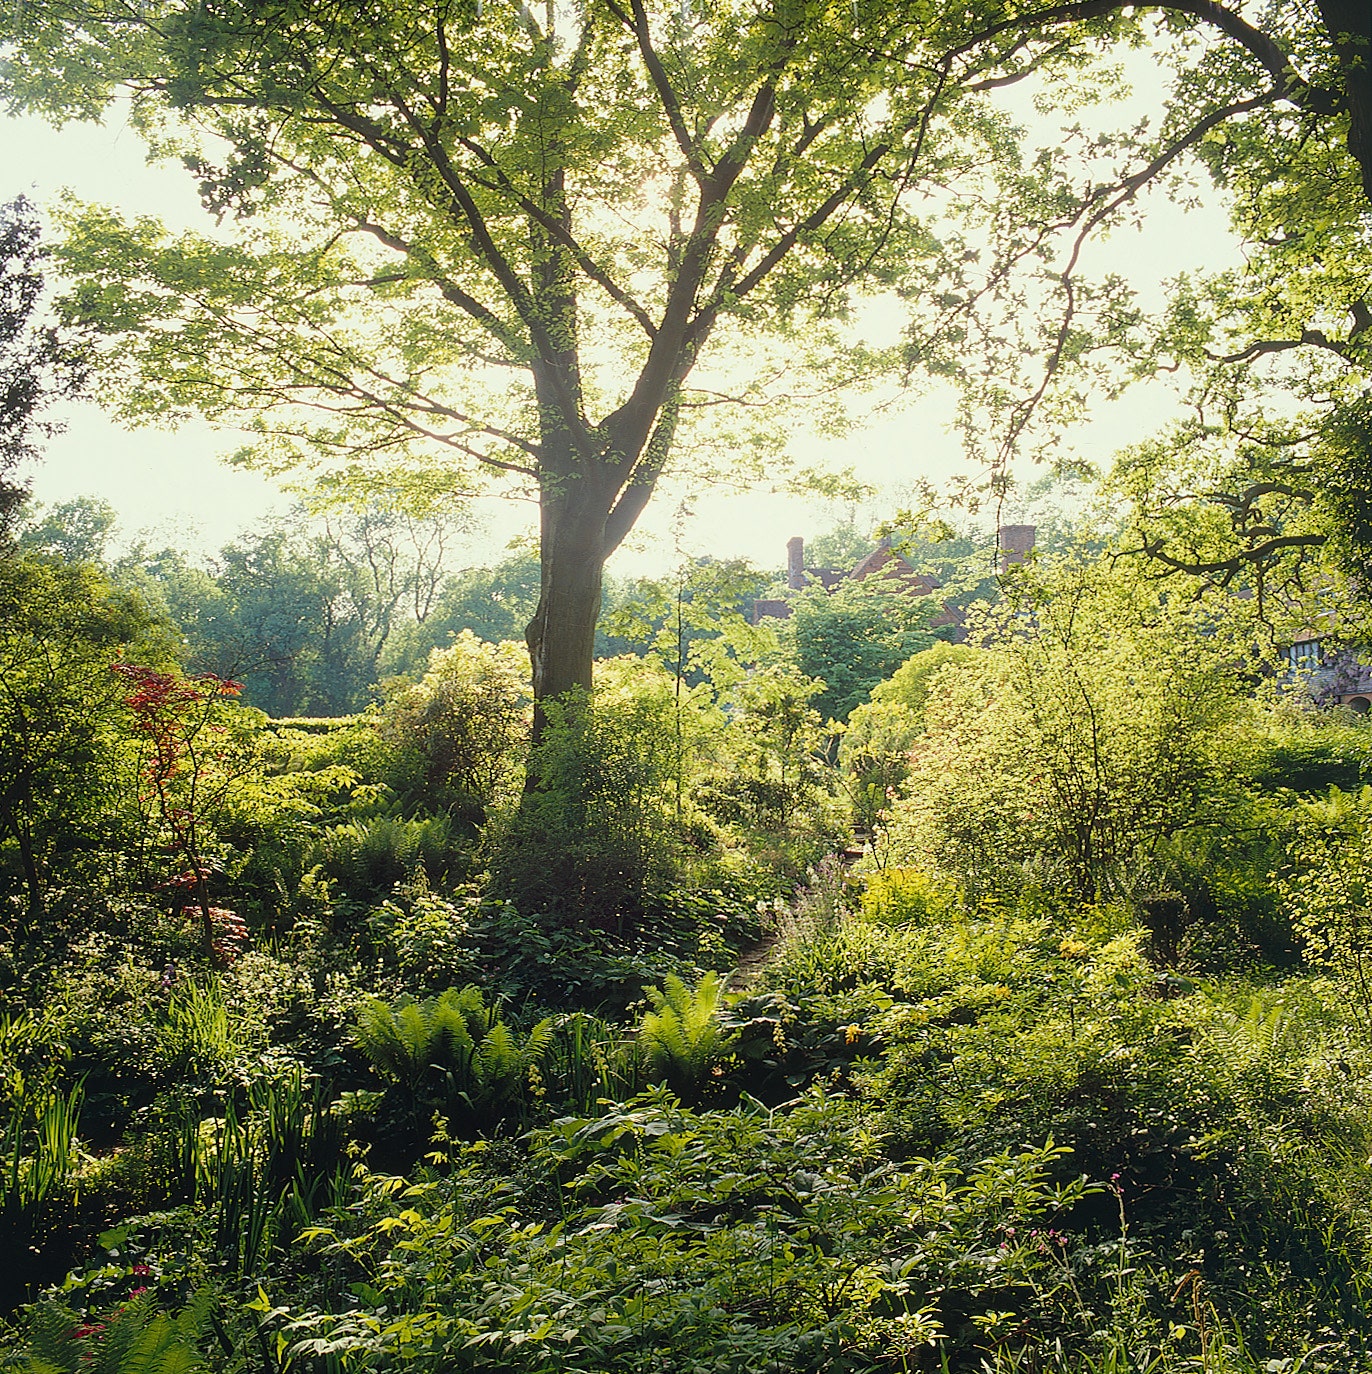 Woodlands at Vann garden Surrey